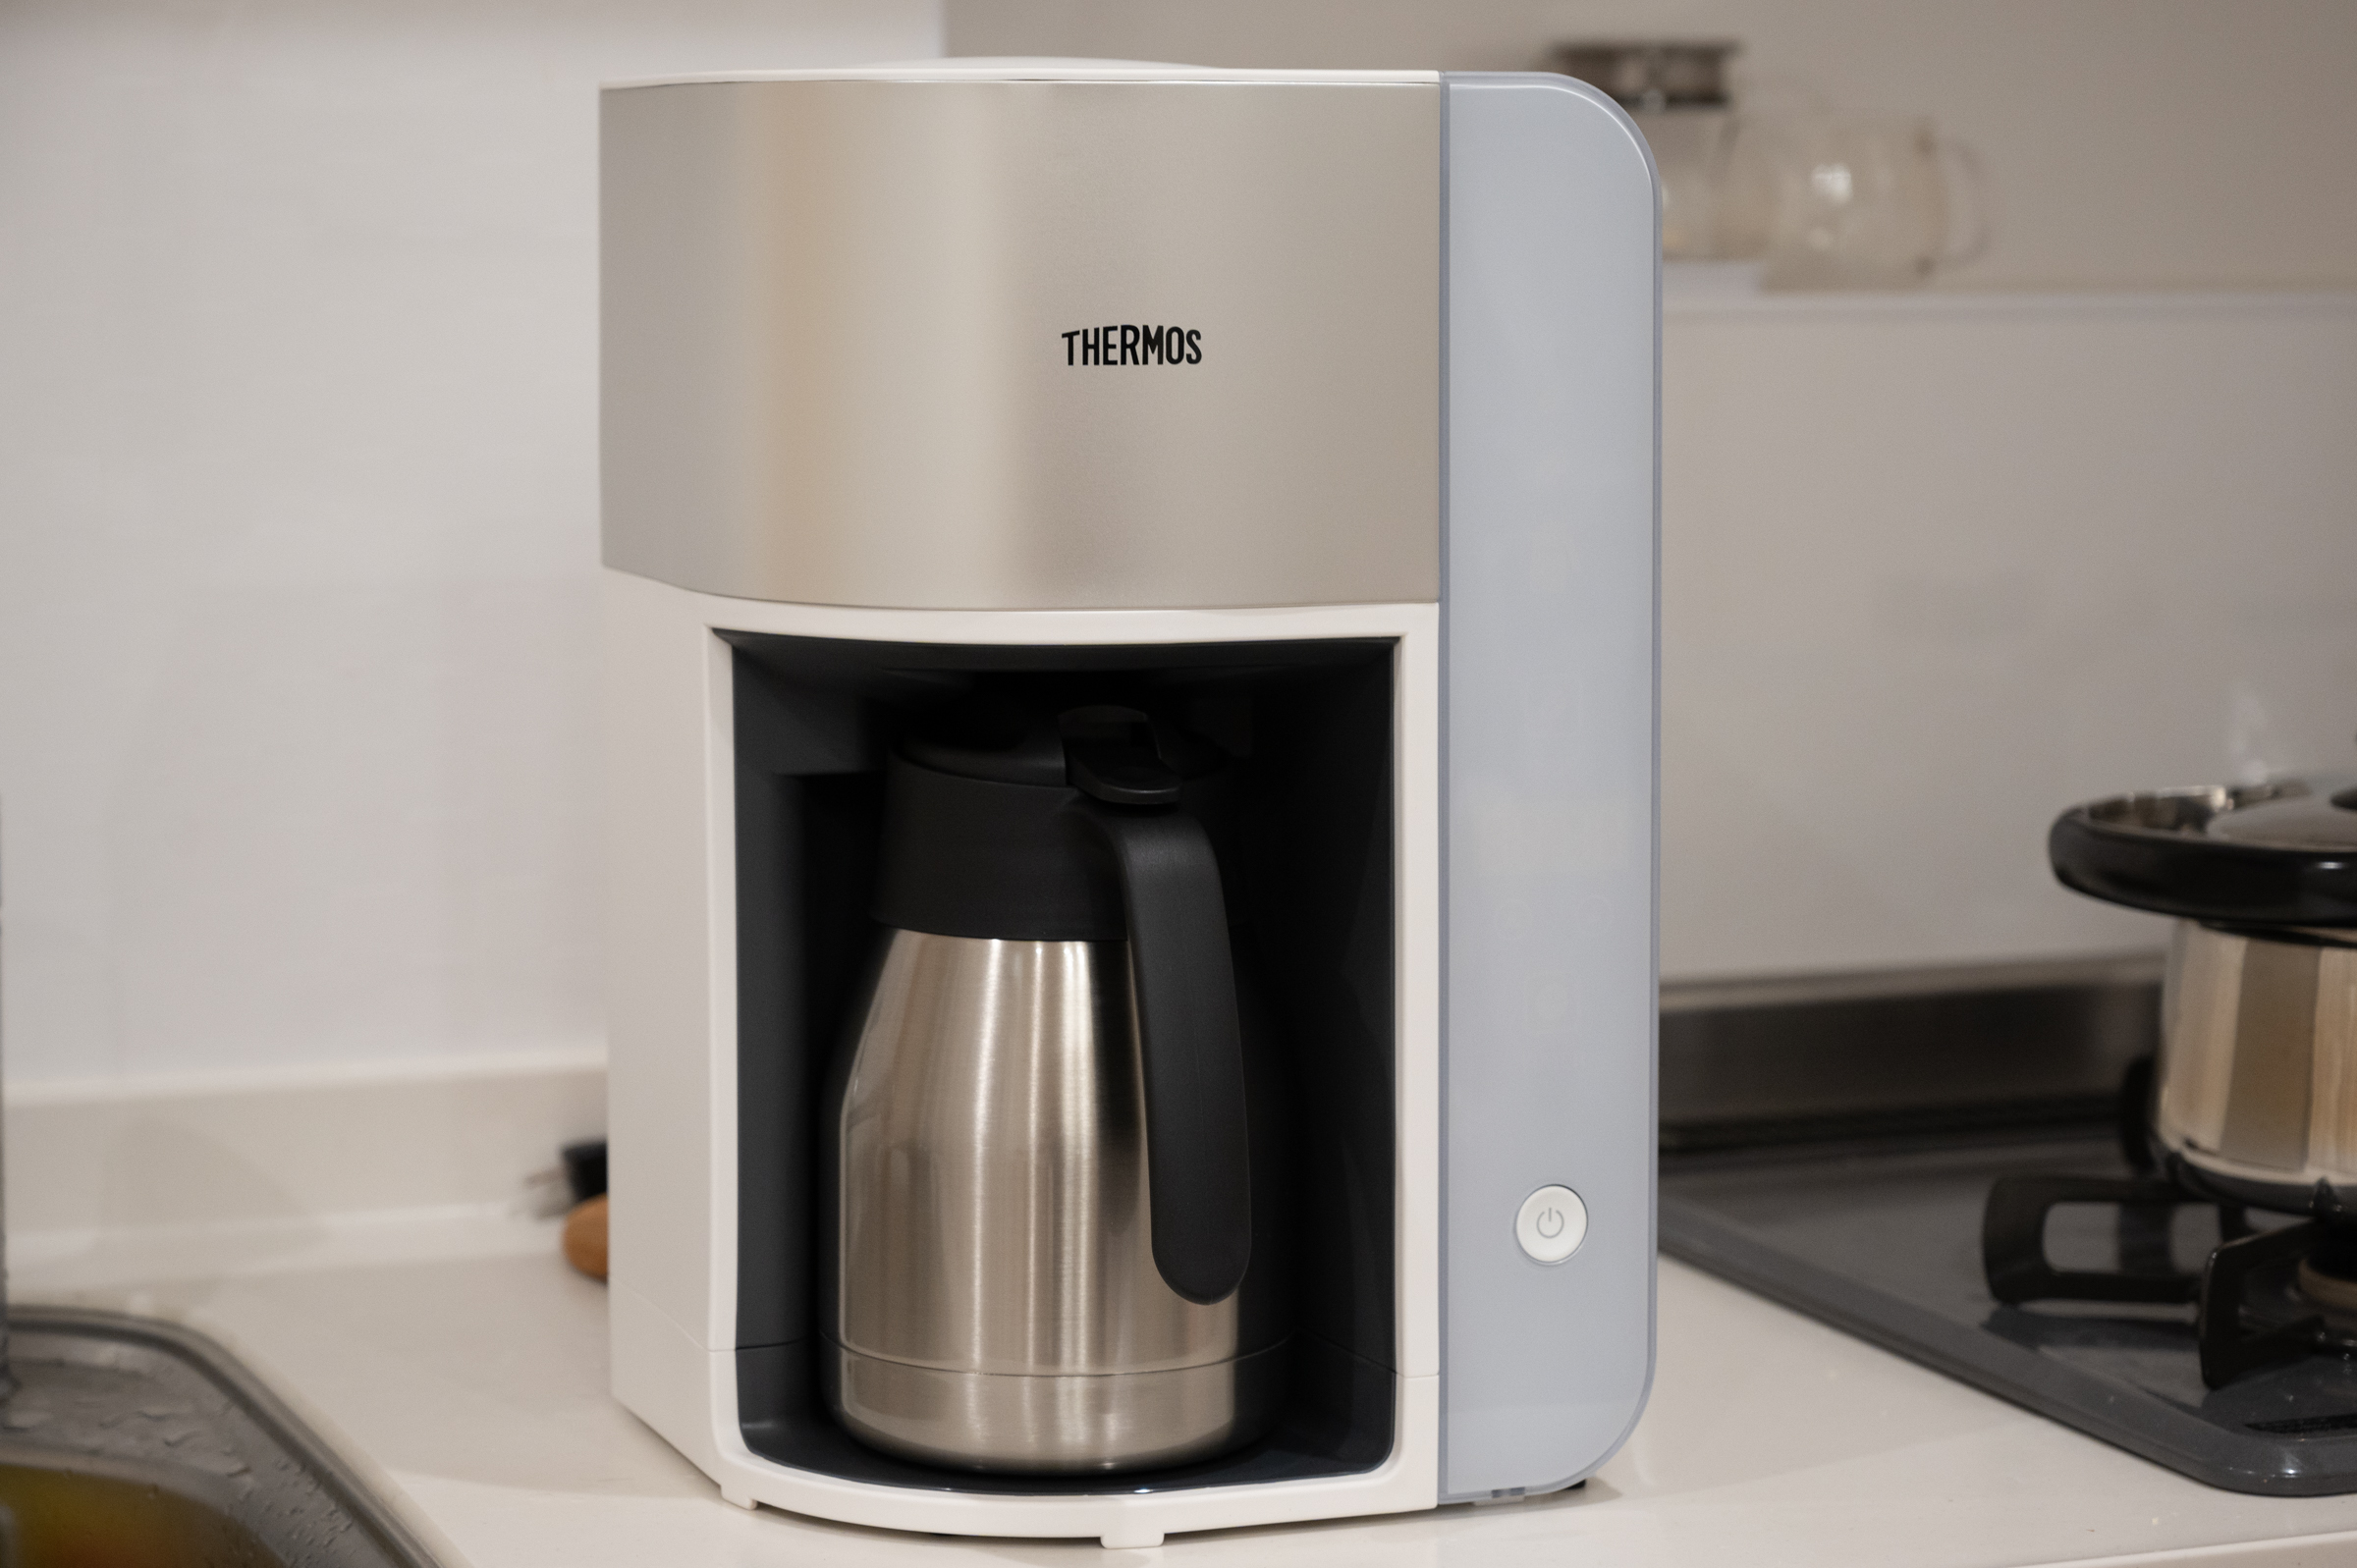 THERMOS 真空断熱ケータイマグ コーヒーメーカー ECG-350 - 2